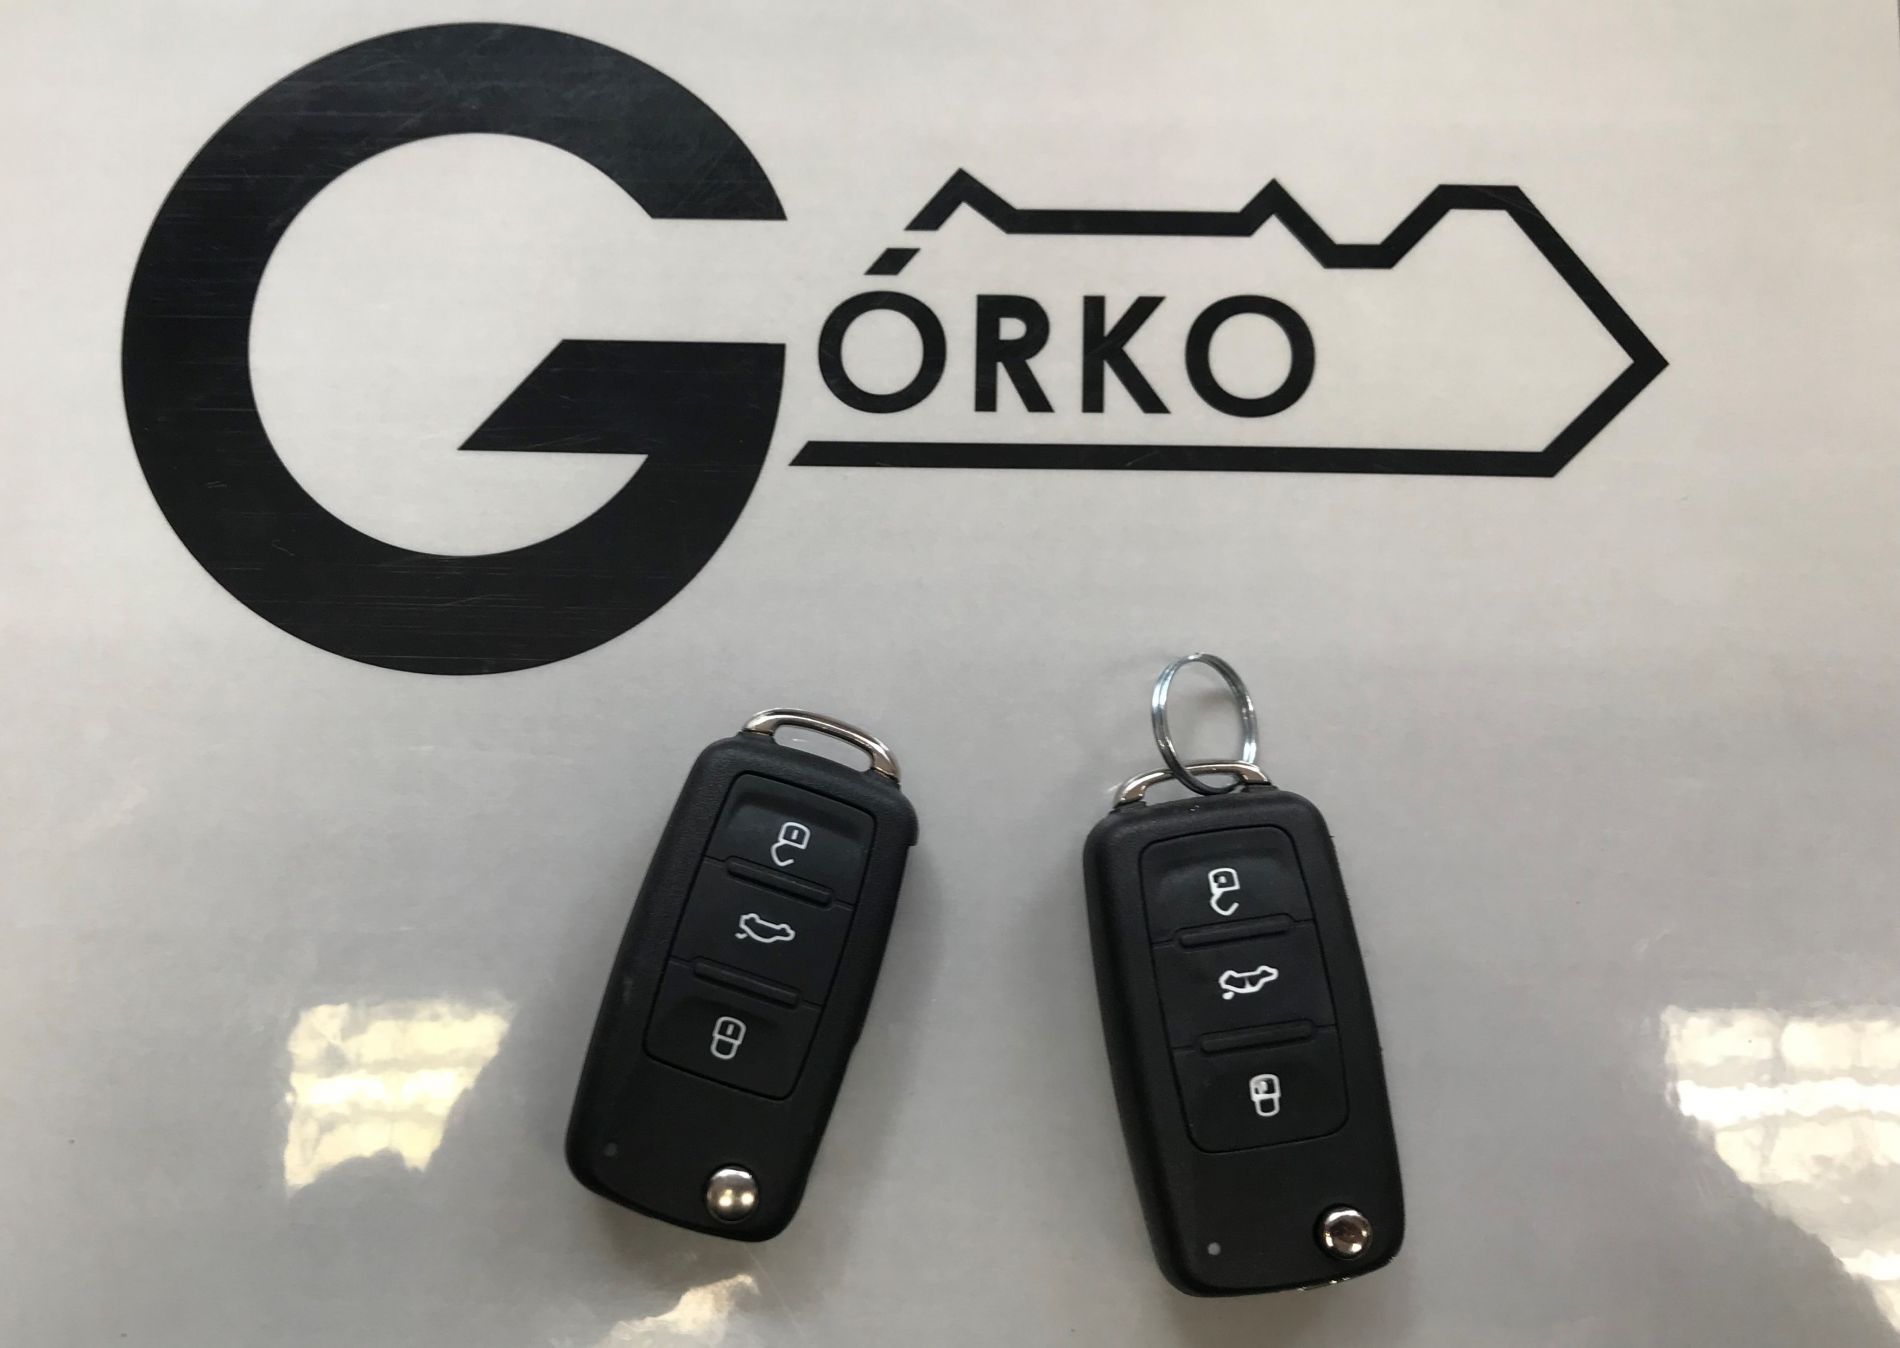 Zakodowanie klucza do VW Tuarega z 2010 roku Górko